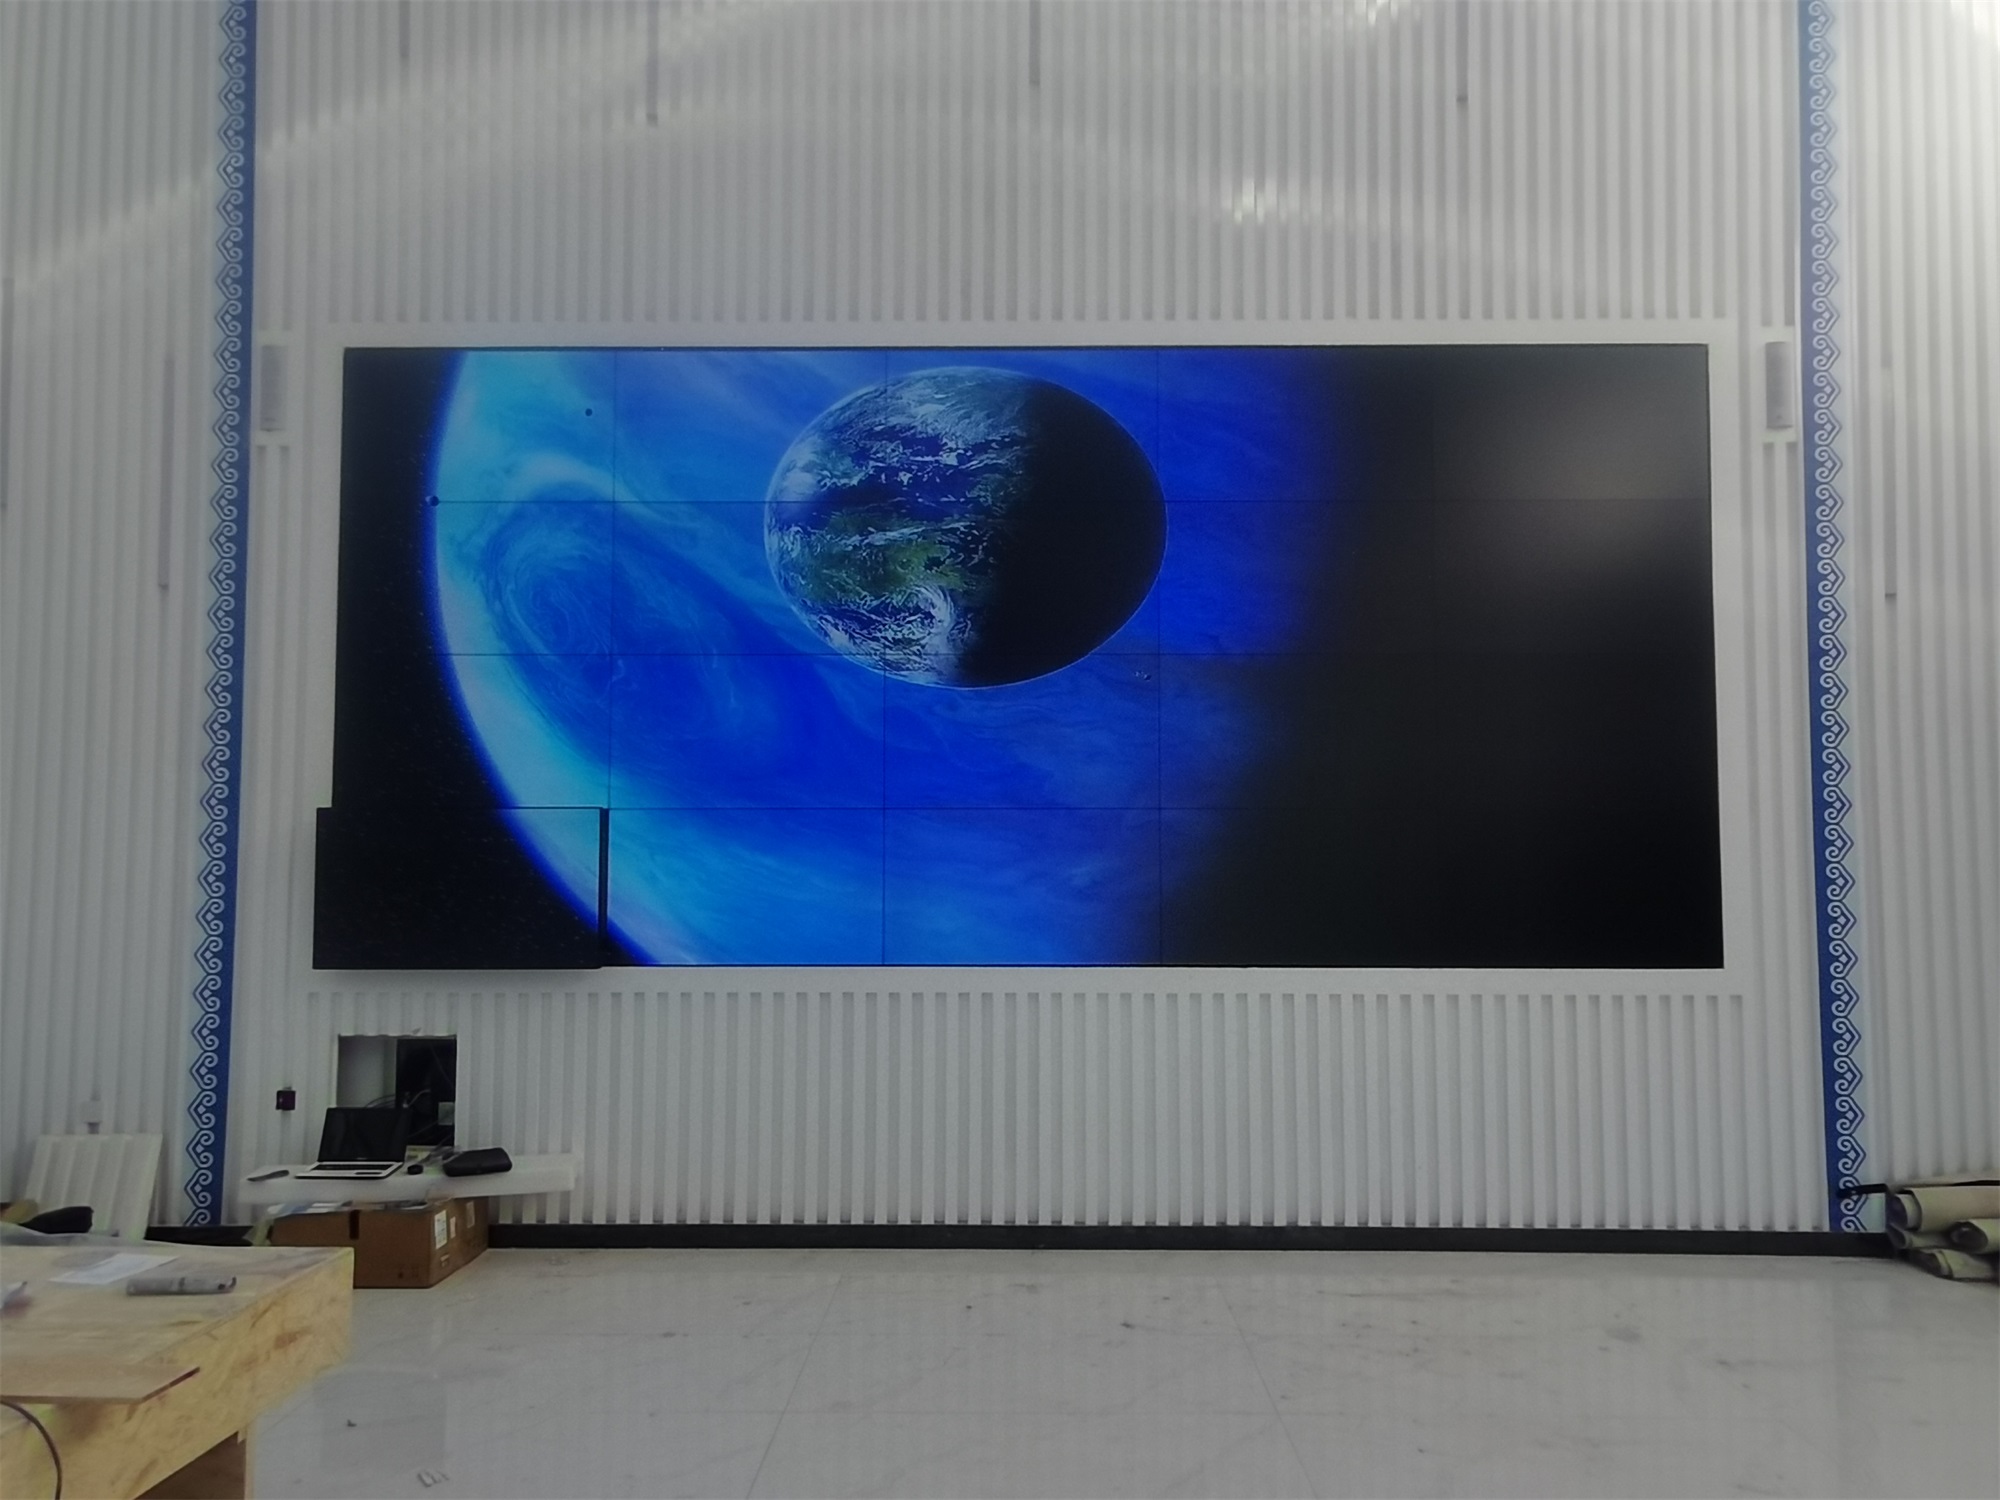 蒙牛牧场展厅55寸0.88mm4X5液晶拼接屏展示案例图片